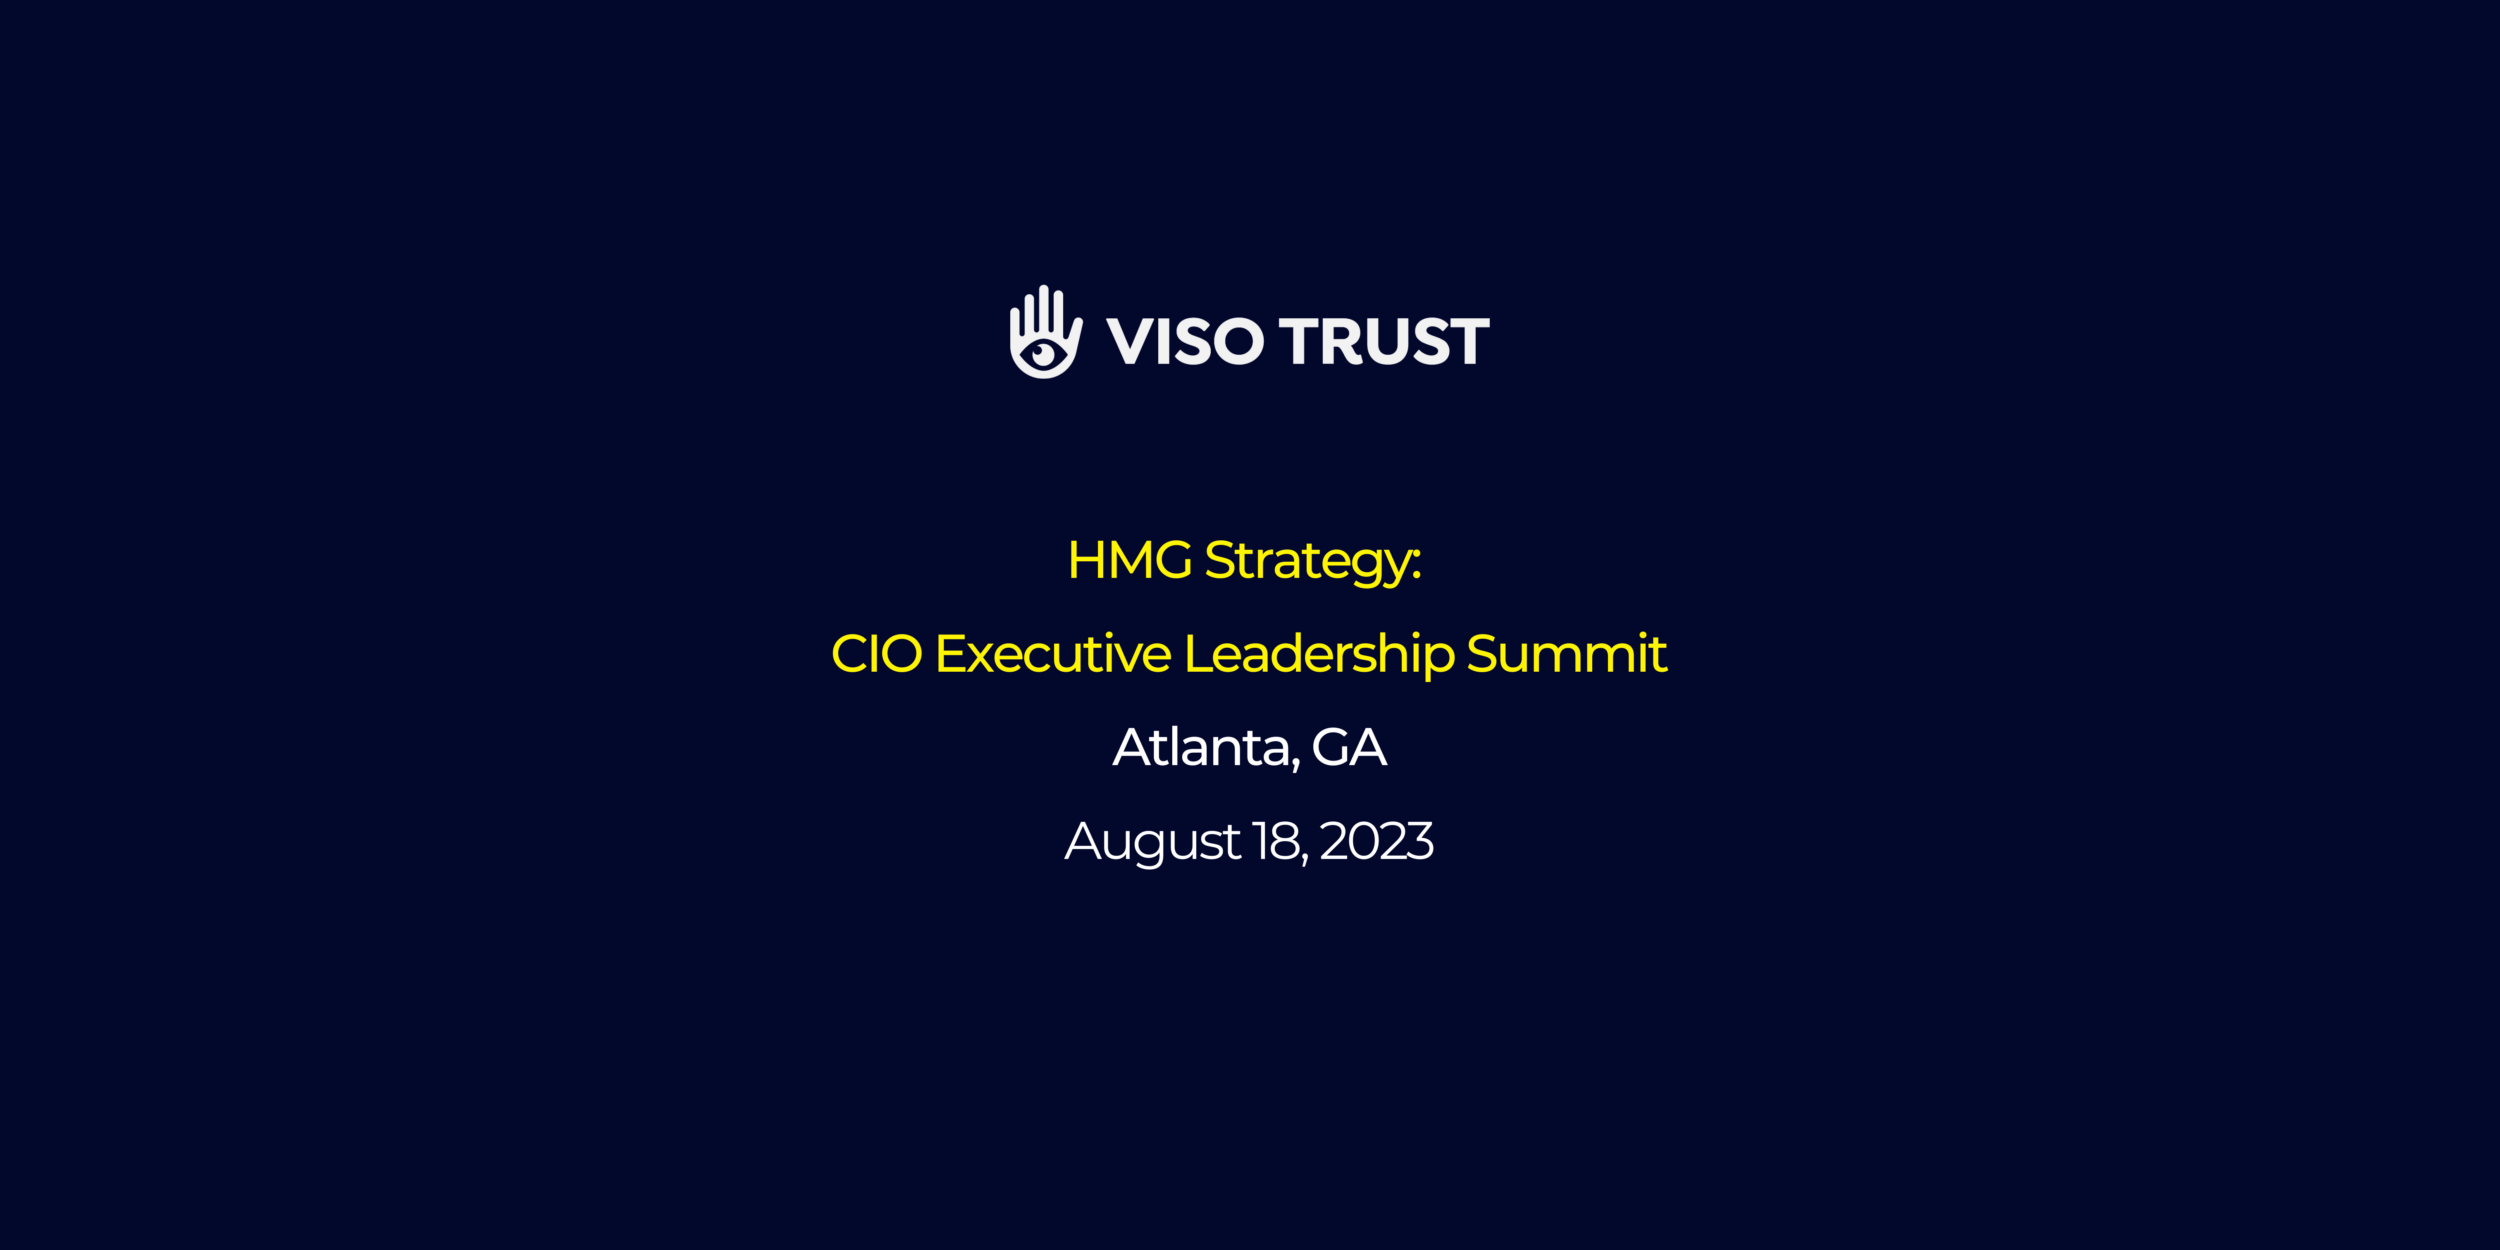 HMG Strategy: CIO Executive Leadership Summit in Atlanta